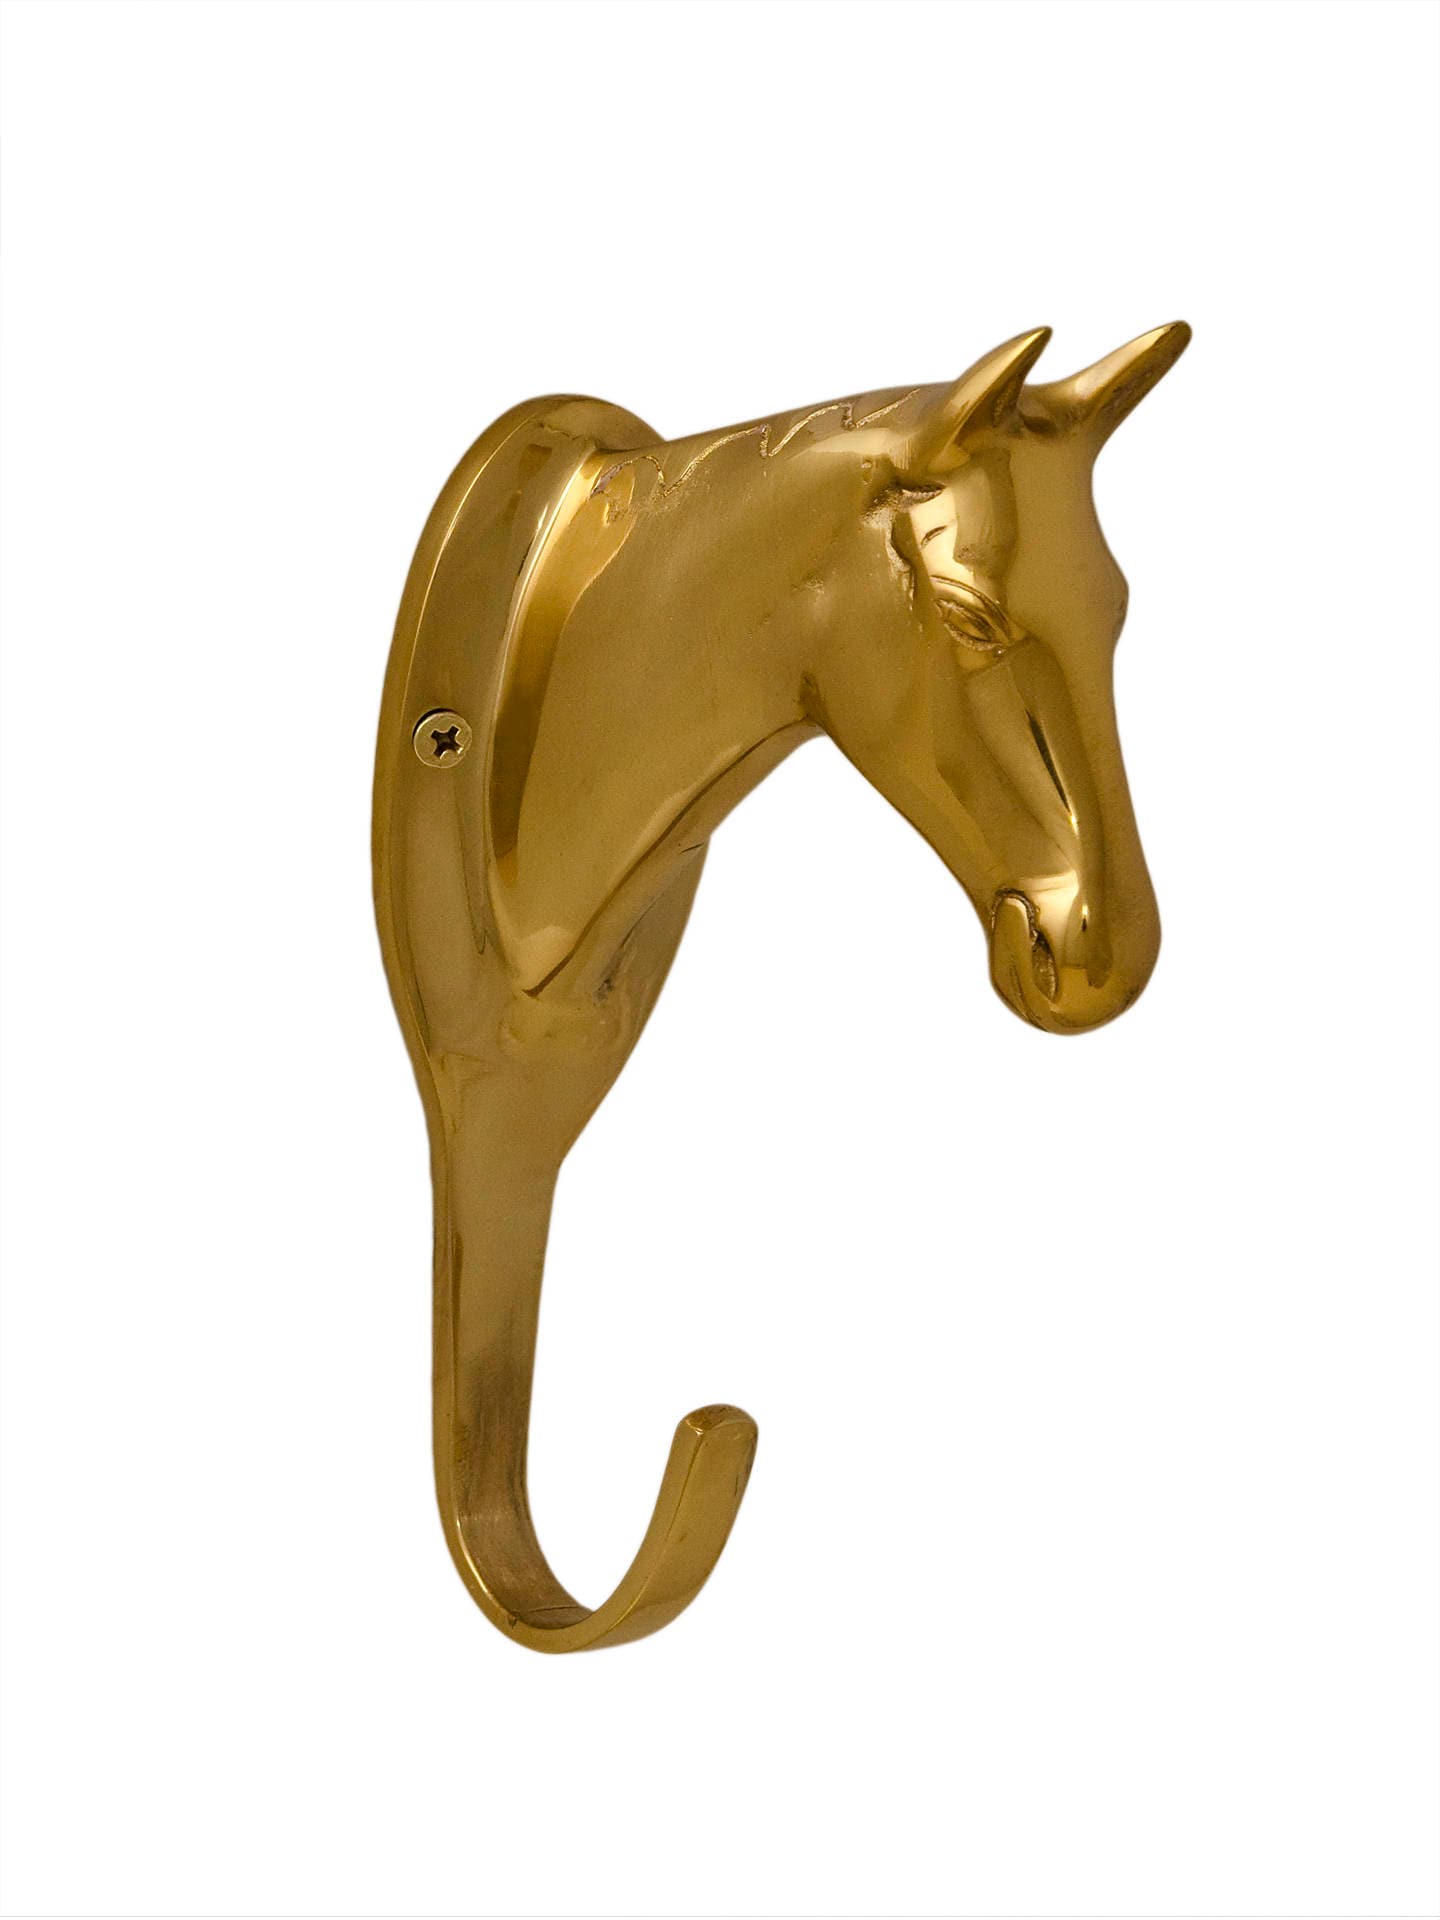 1 Solid Brass Horse Head Wall hook / Coat hooks / Hanger – UpperDutch